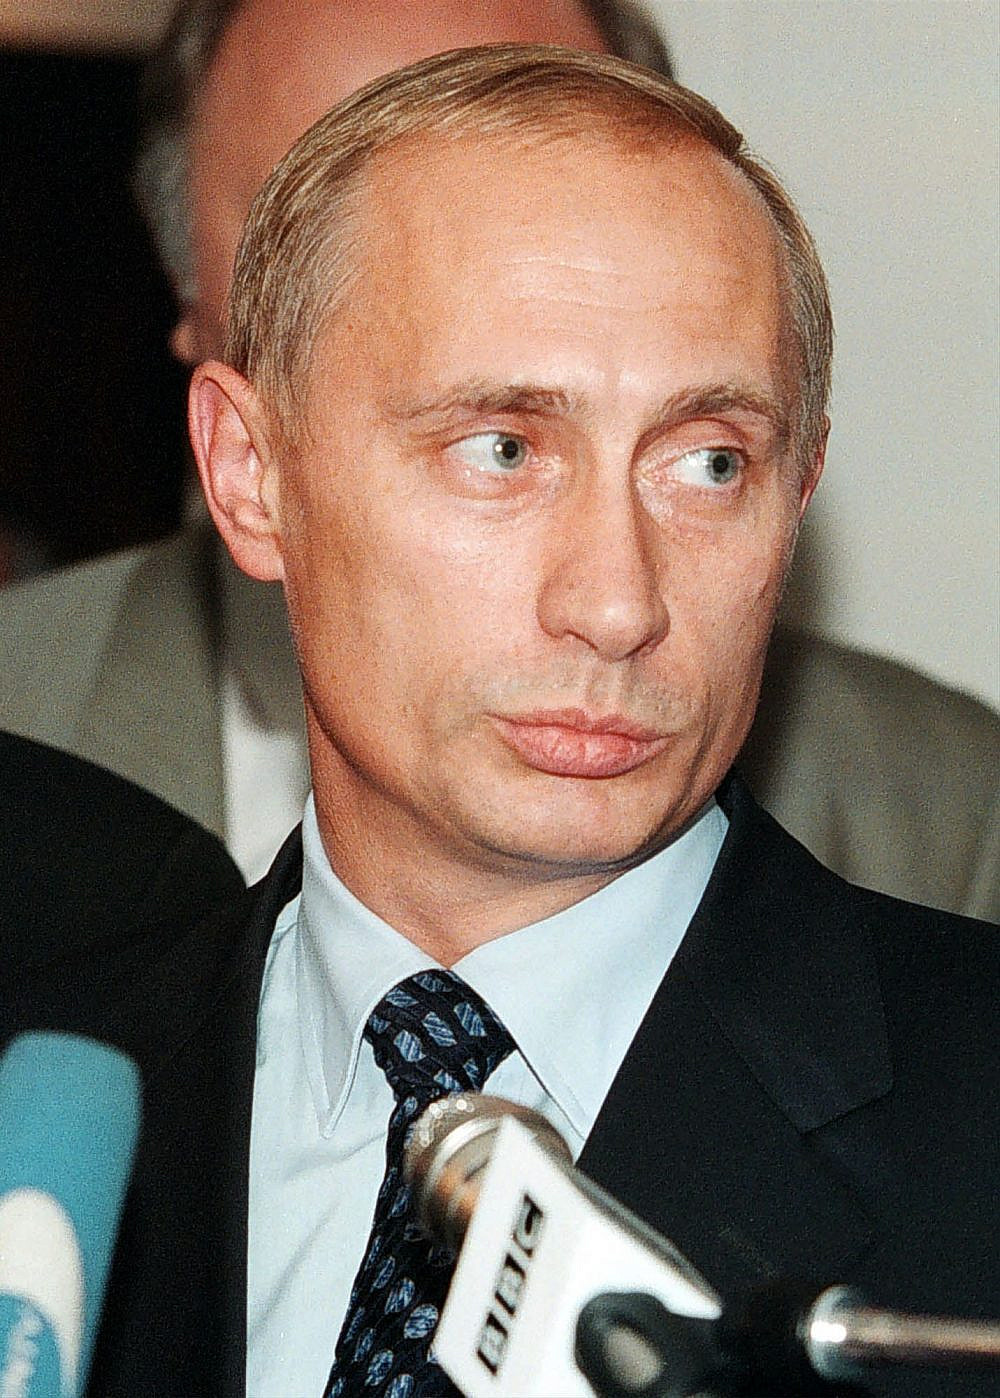 ולדימיר פוטין בצעירותו, 1999 | צילום: AFP via Getty Images